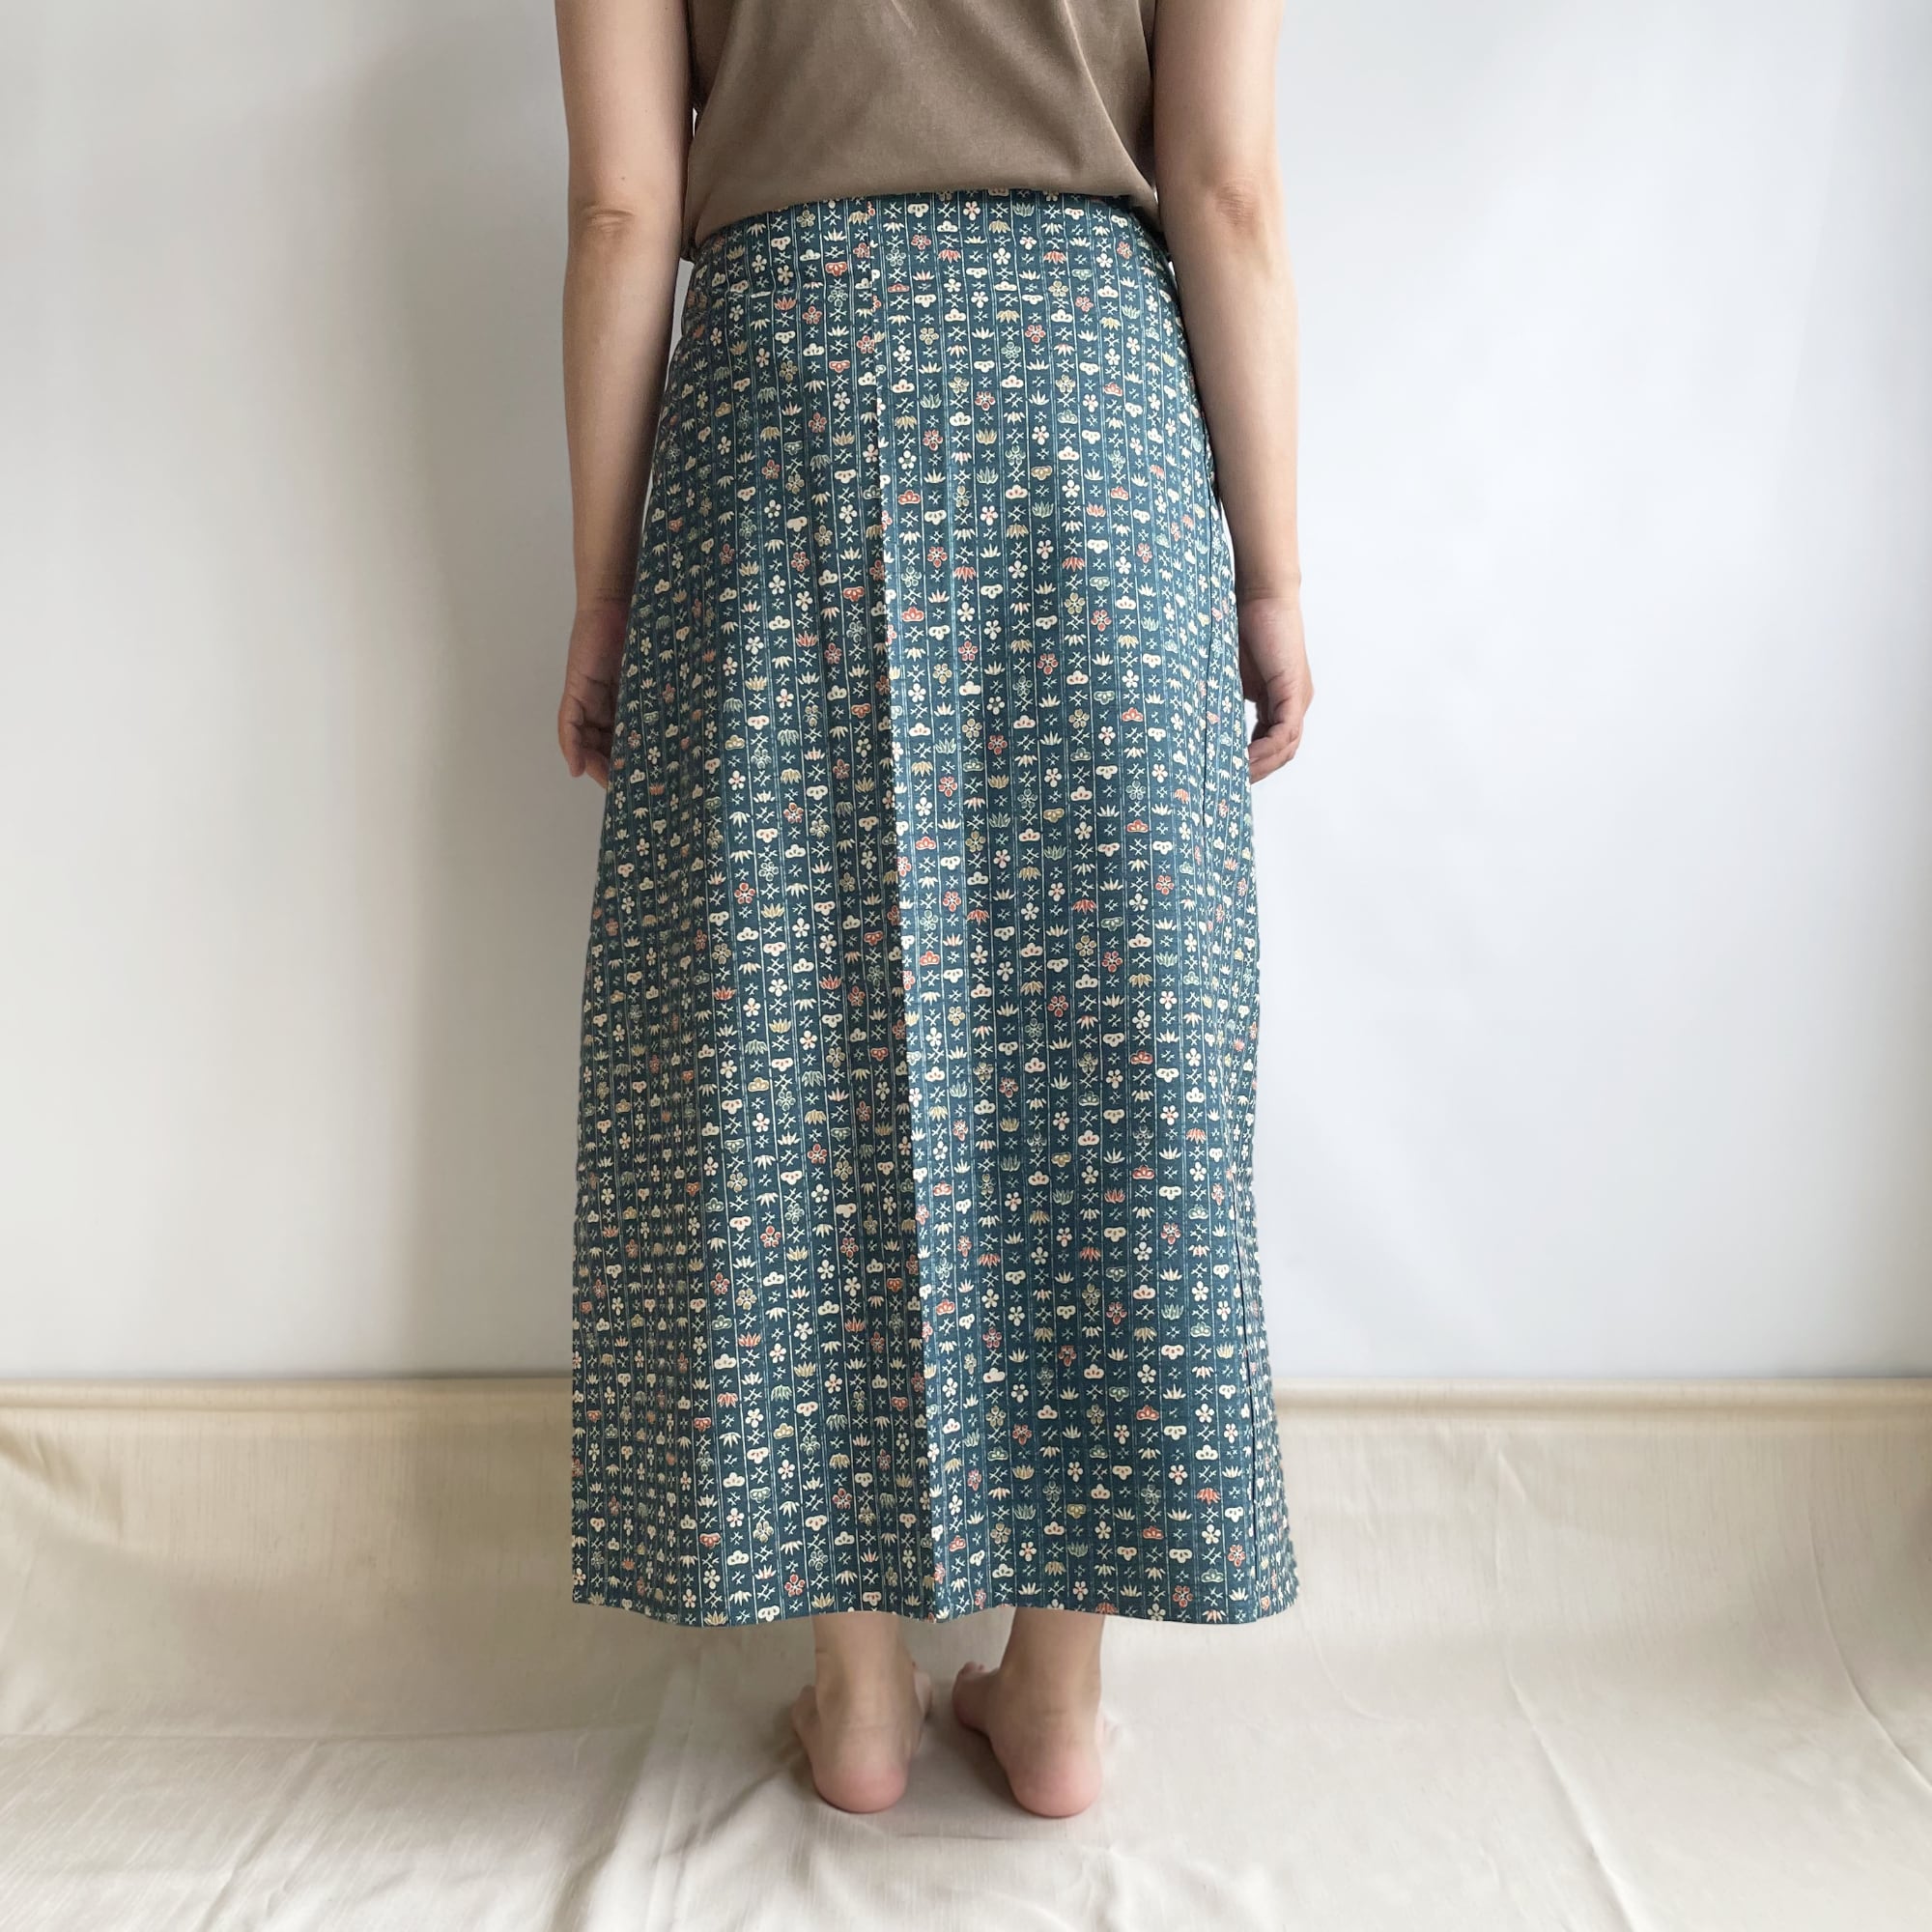 1点もの Unique item】四角布のスカート 着物リメイク, Square cloth 